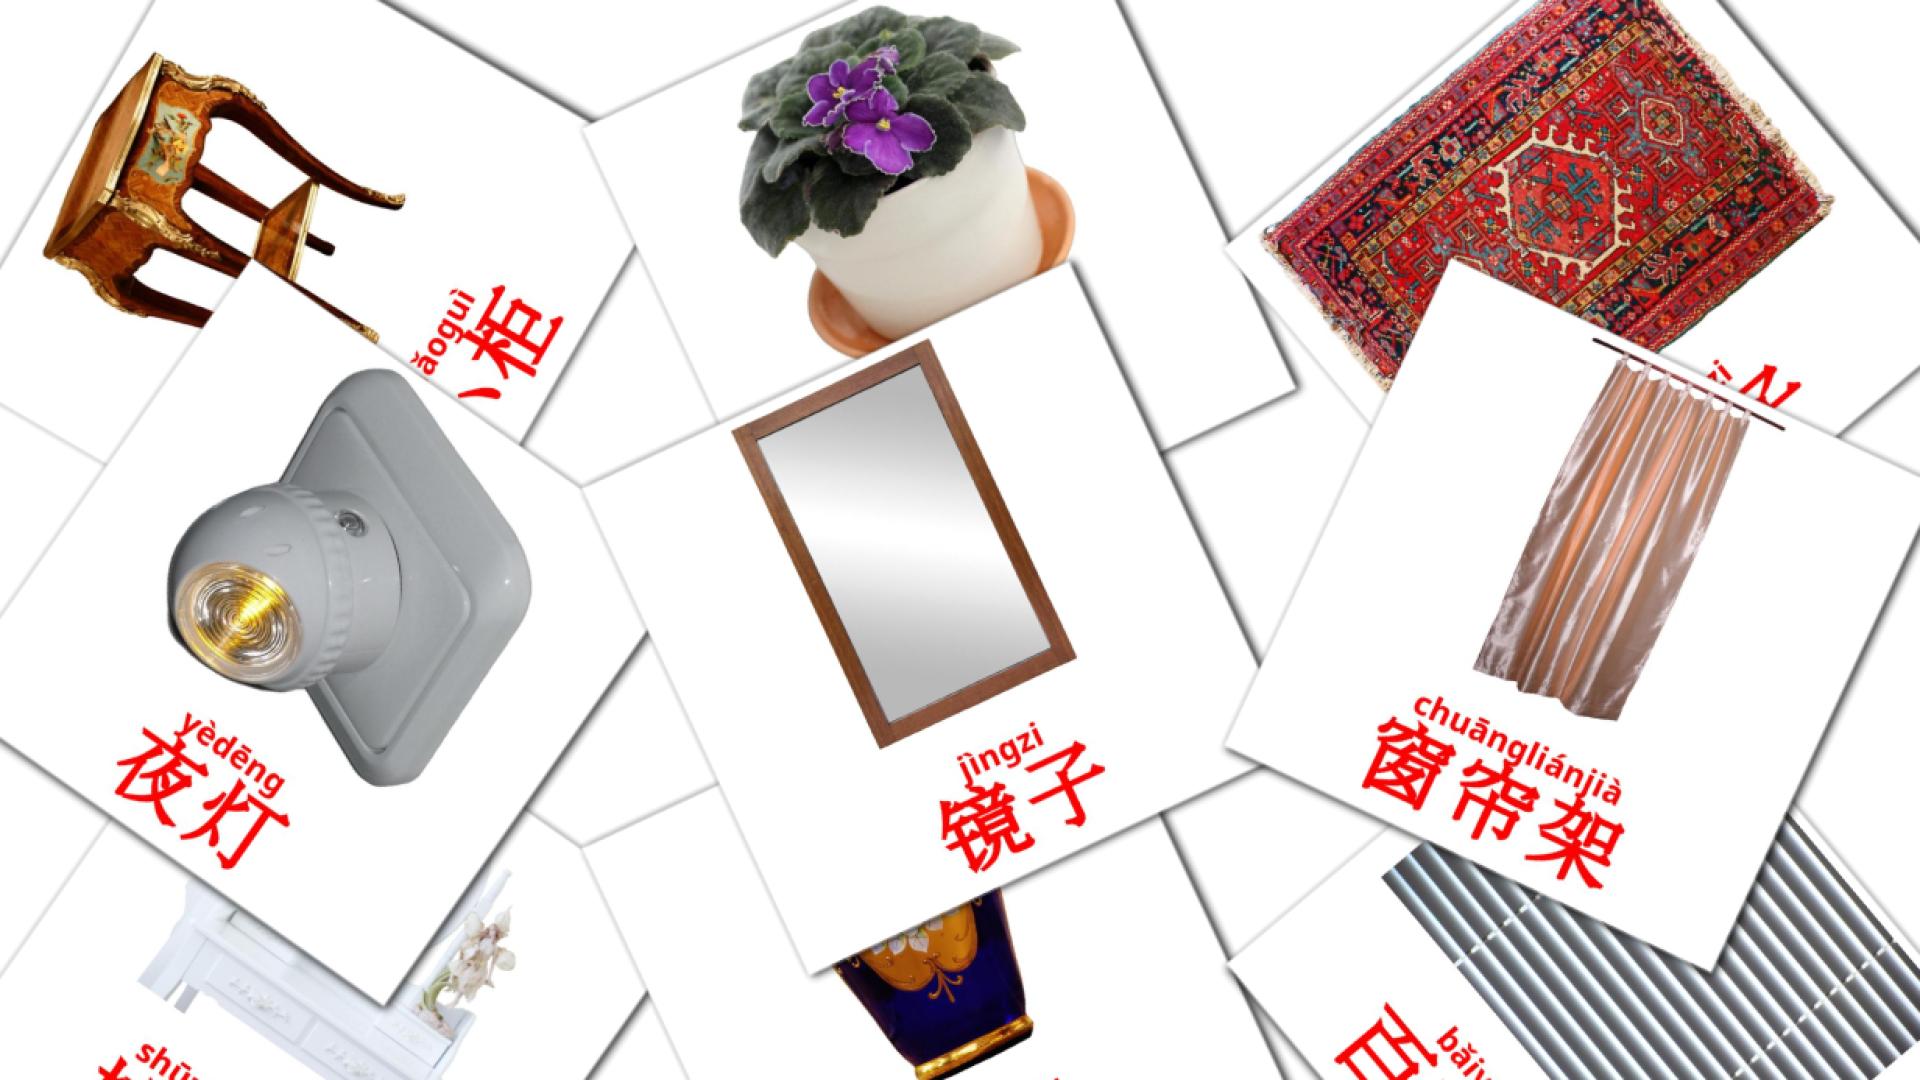 Accessoires im Schlafzimmer - Chinesisch(Vereinfacht) Vokabelkarten